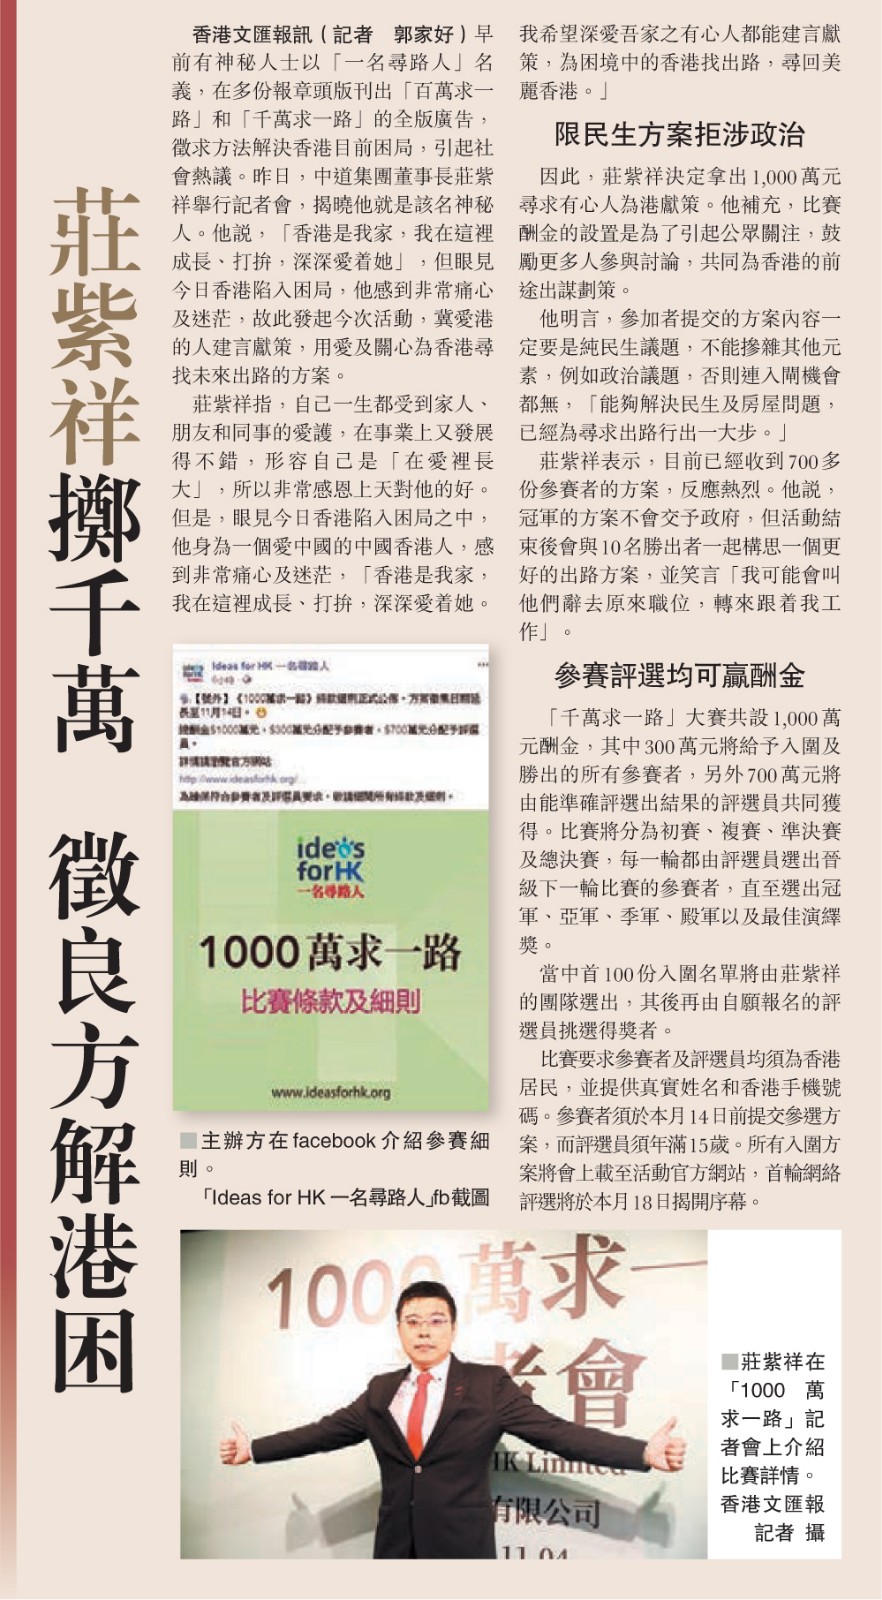 莊紫祥 常務副理事長 設立 「1000萬求一路」比賽-2